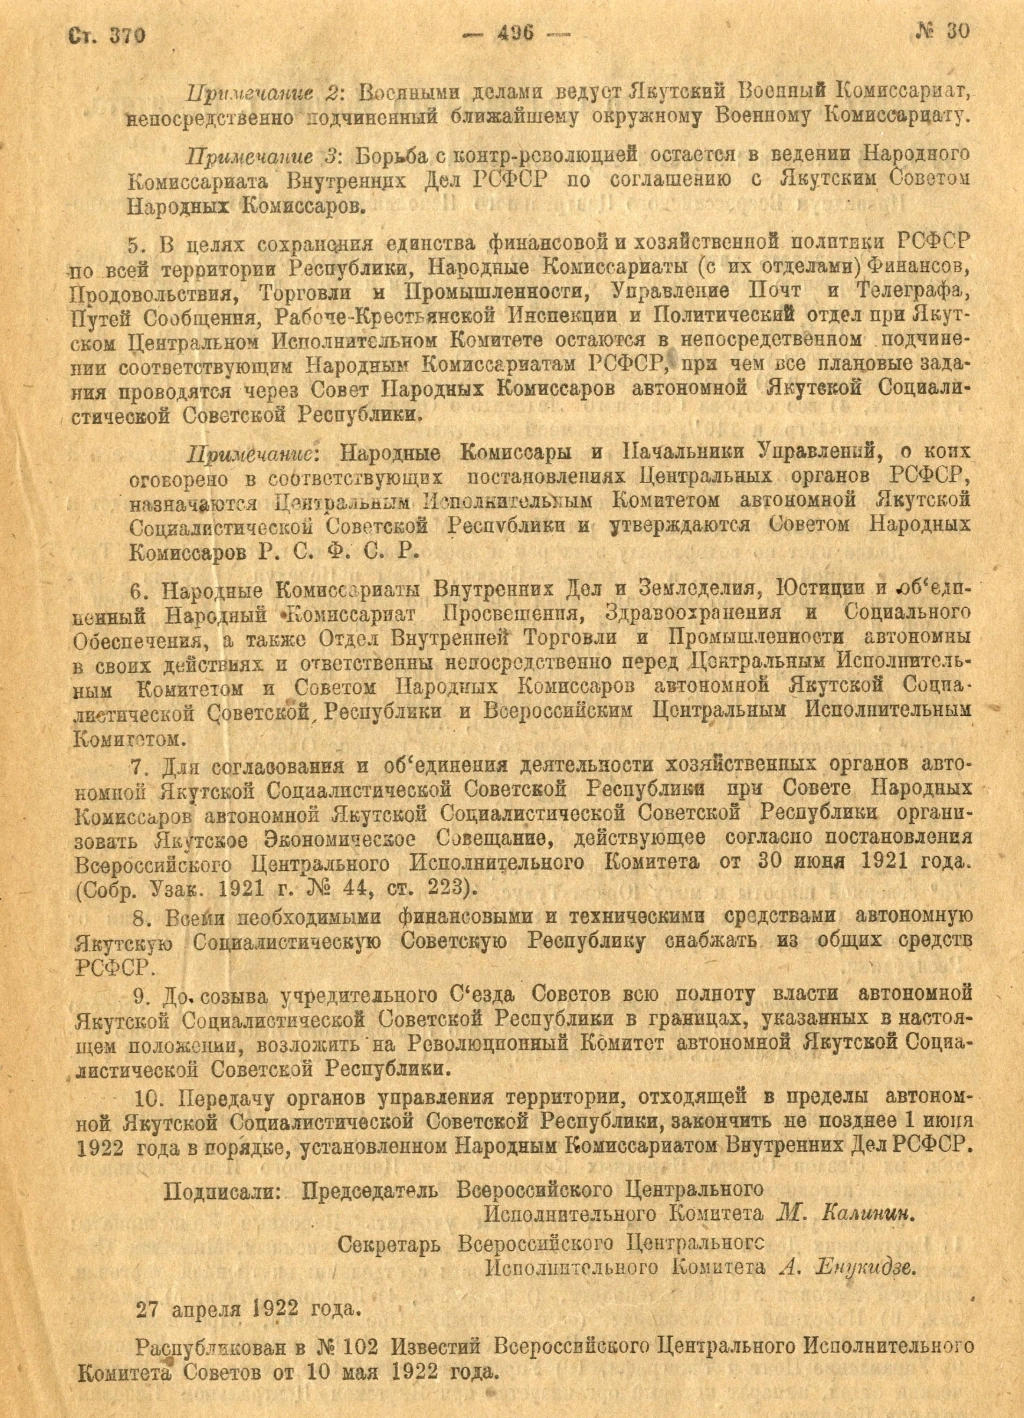 27 апреля — особая дата в истории Якутии, Фото с места события из других источников